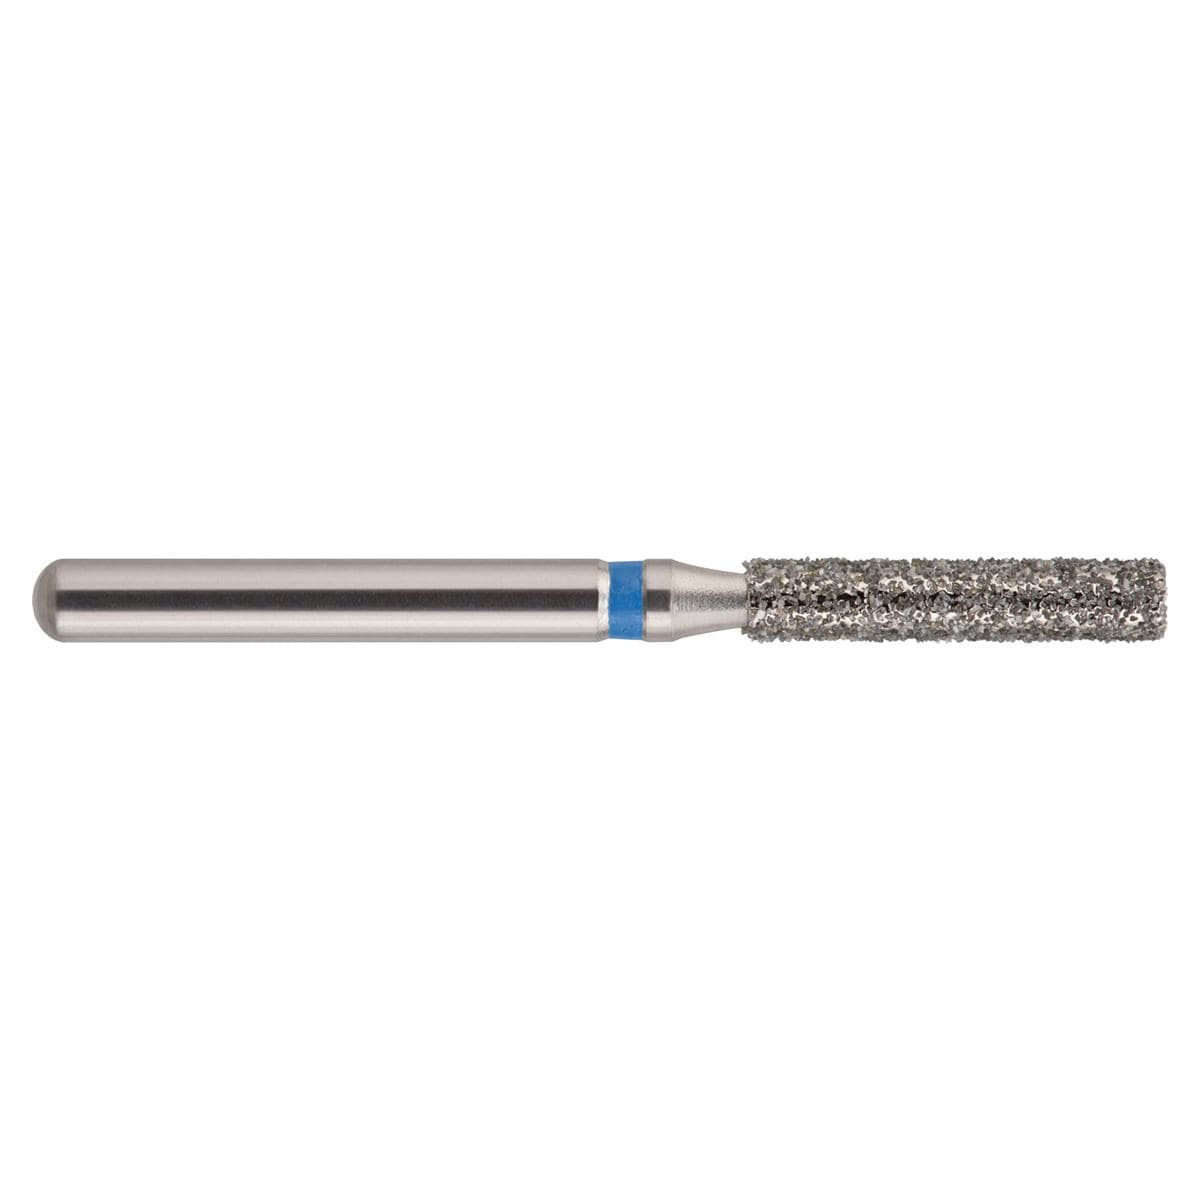 NeoDiamond FG, Form 111, Zylinder flach - ISO 016, mittel (blau), Packung 10 Stück